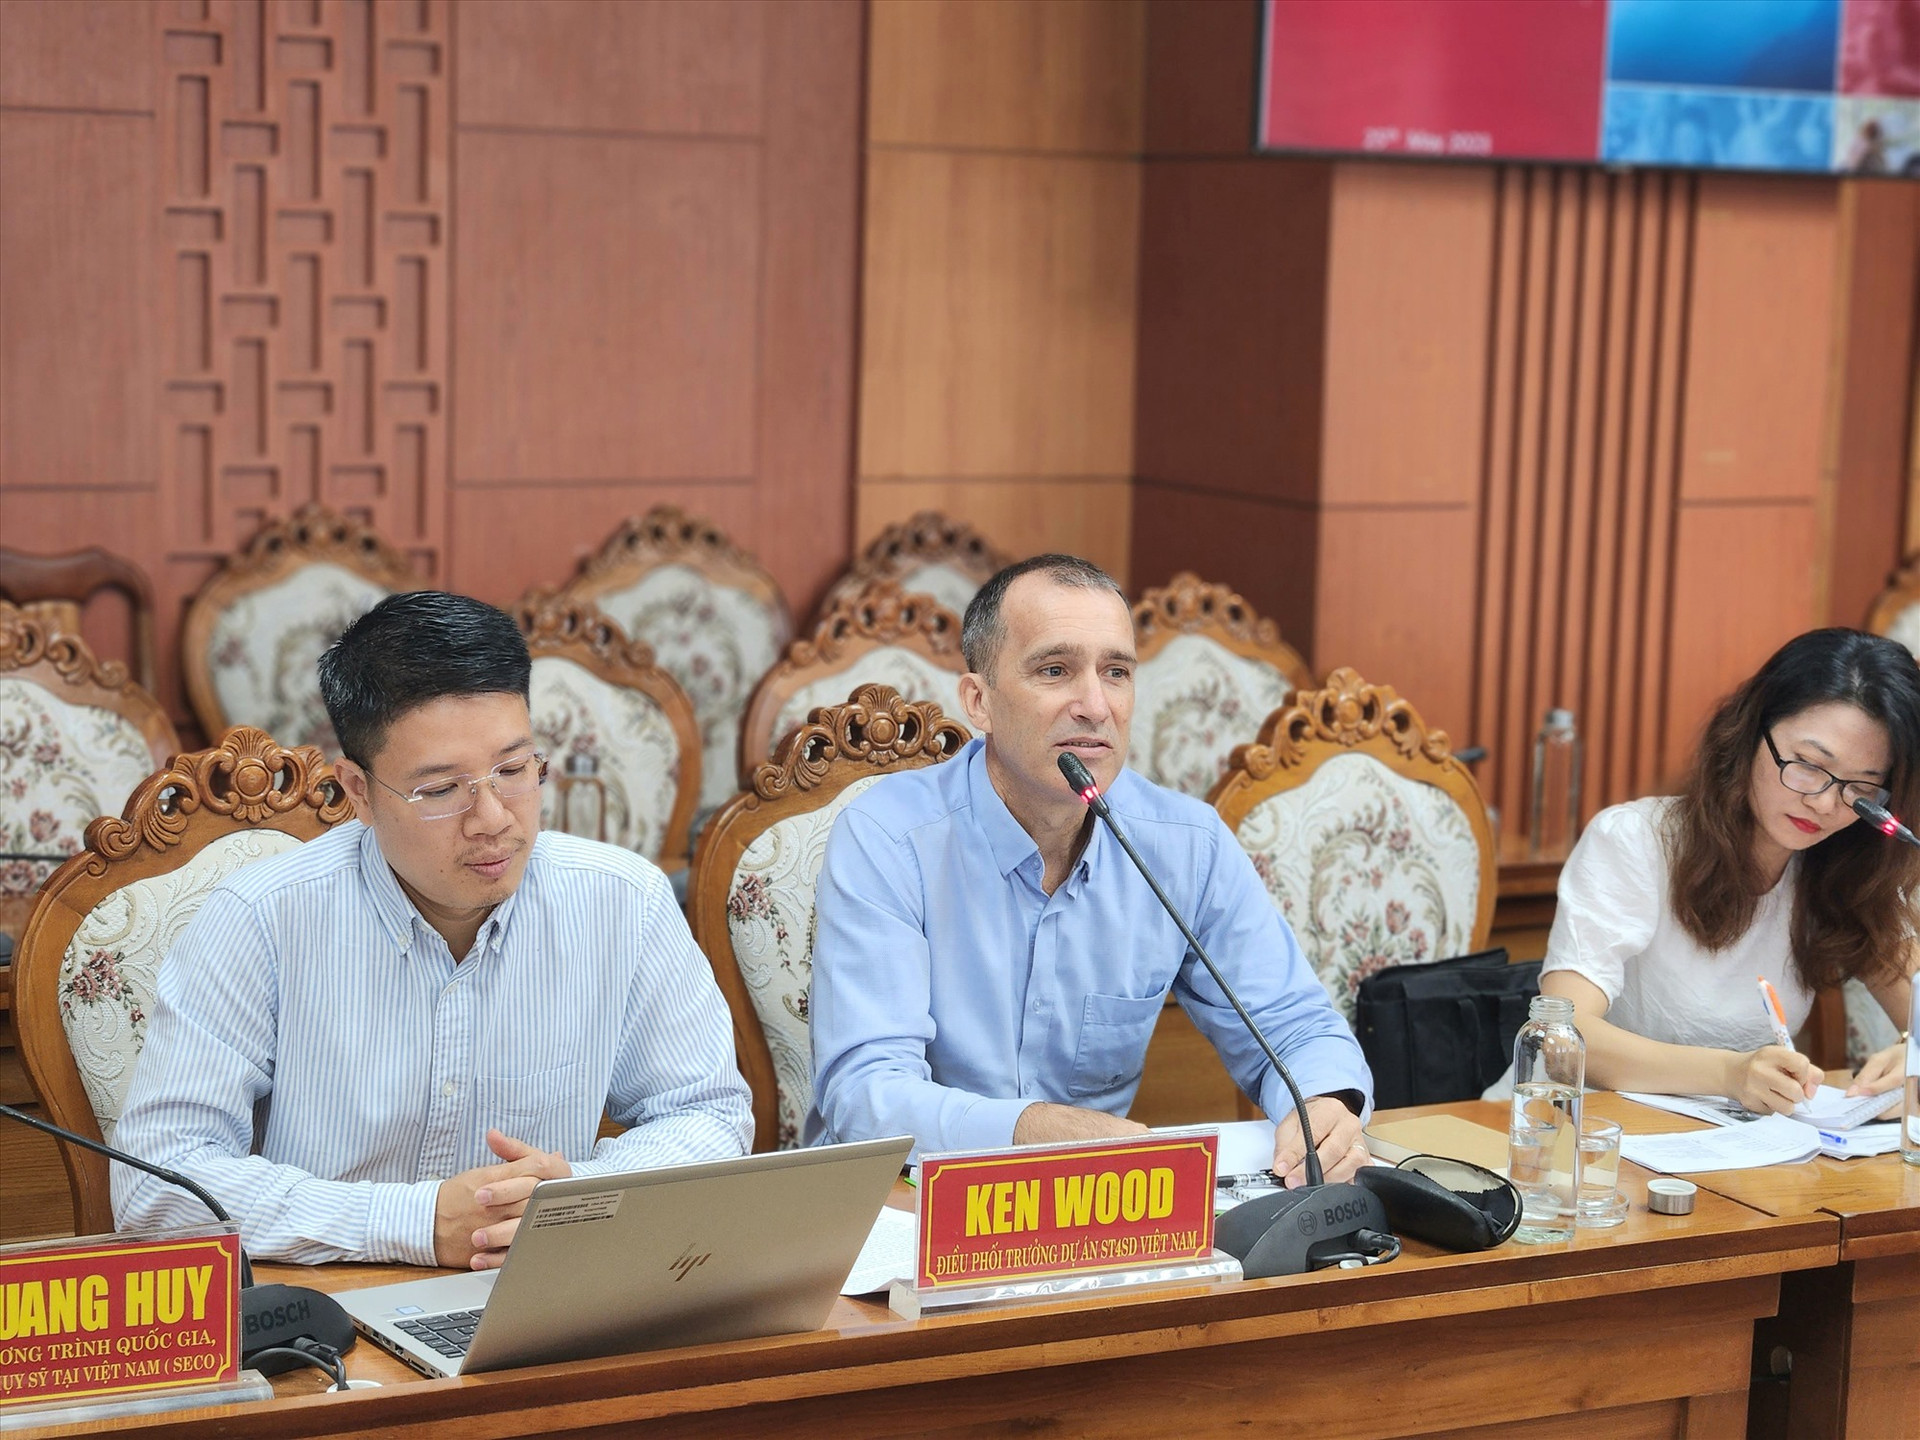 Đại diện đoàn công tác đánh giá cao kết quả phát triển du lịch xanh của Quảng Nam trong những năm gần đây. Ảnh: Q.T